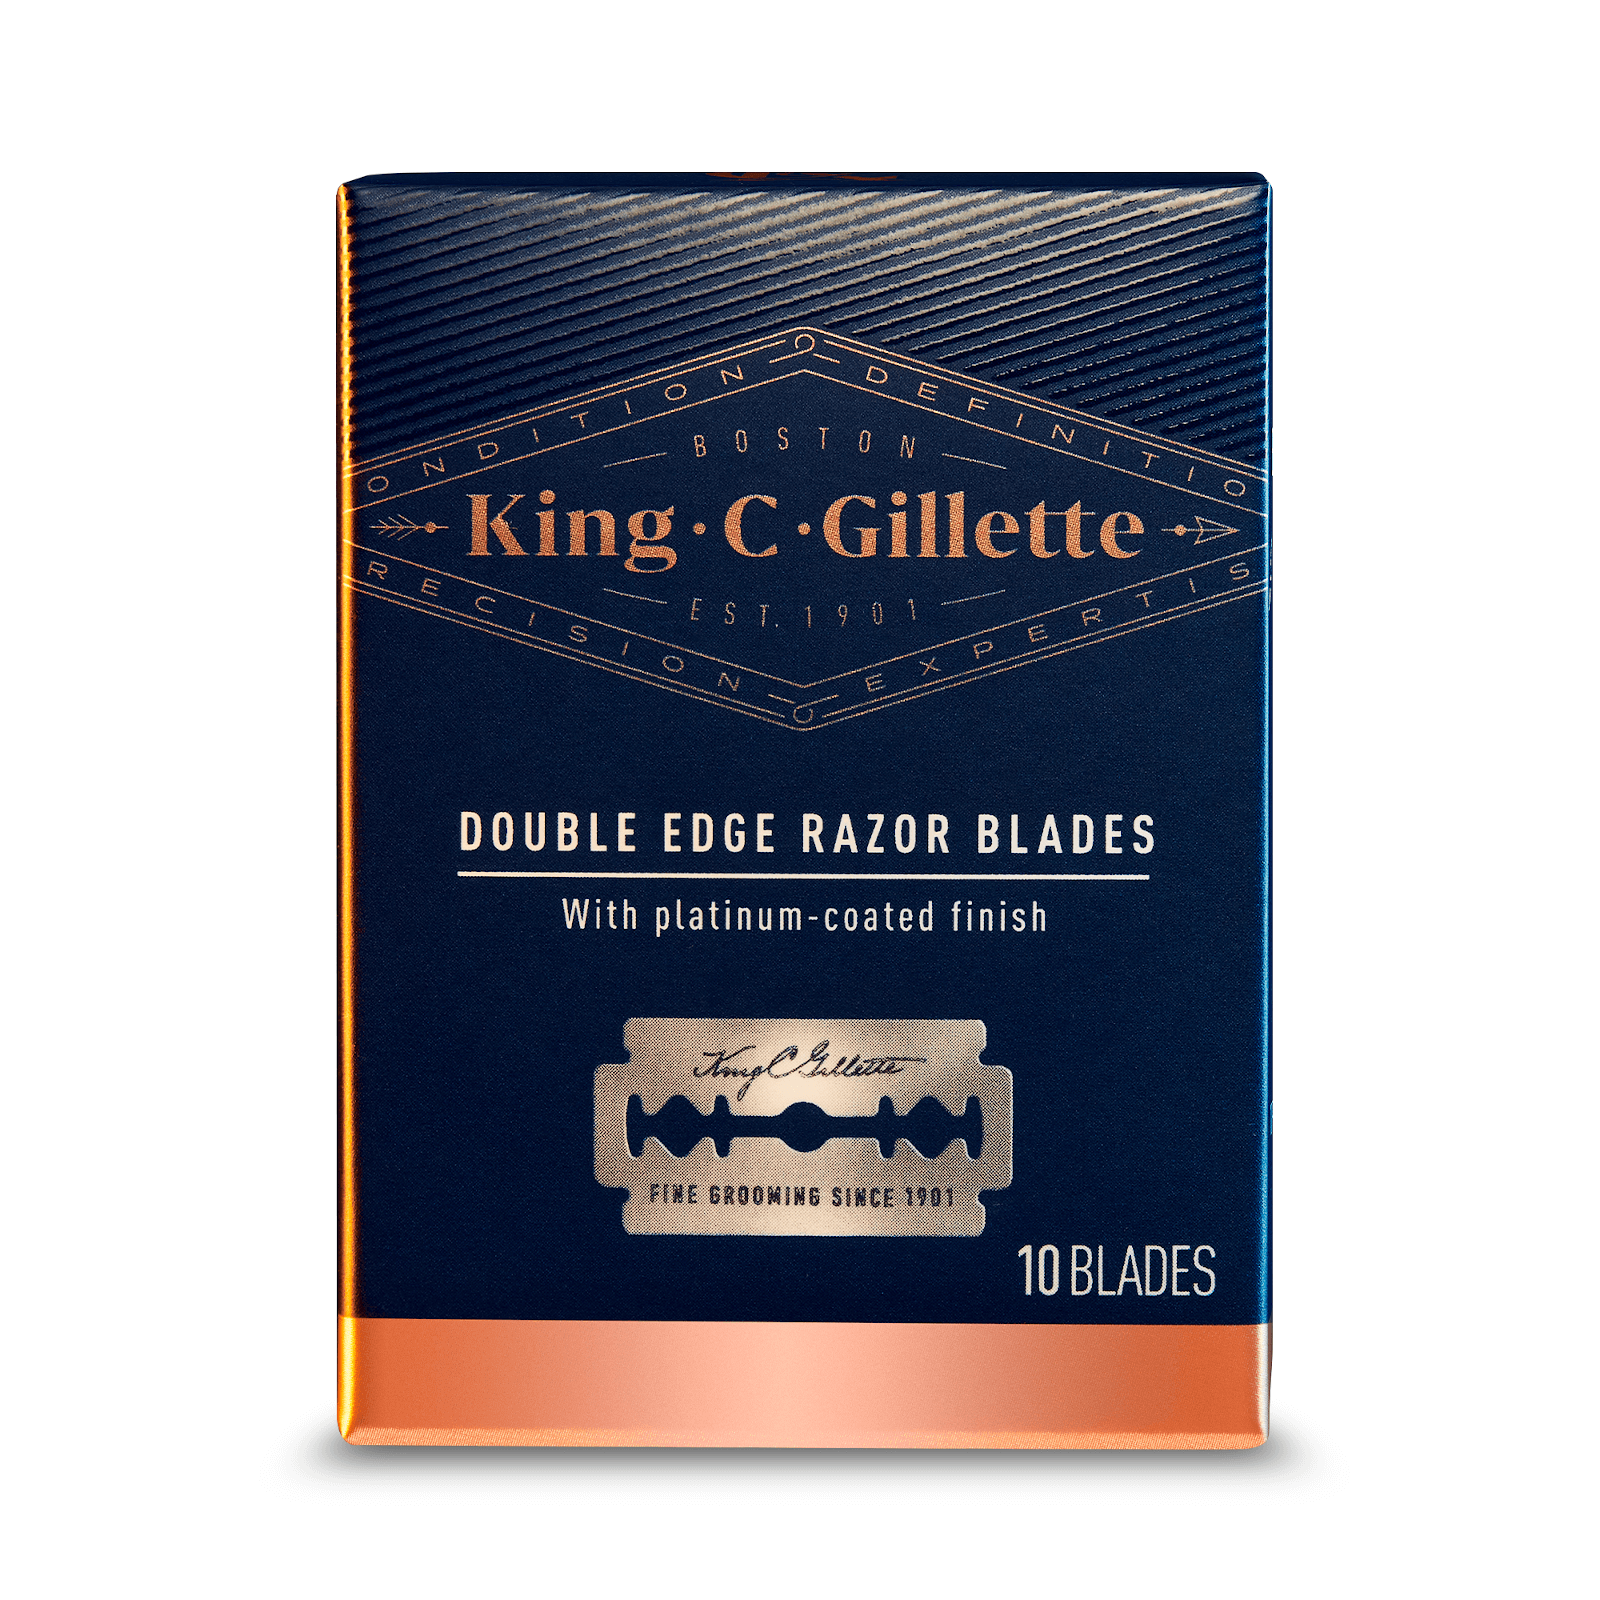 Gillette King žiletky 10 ks